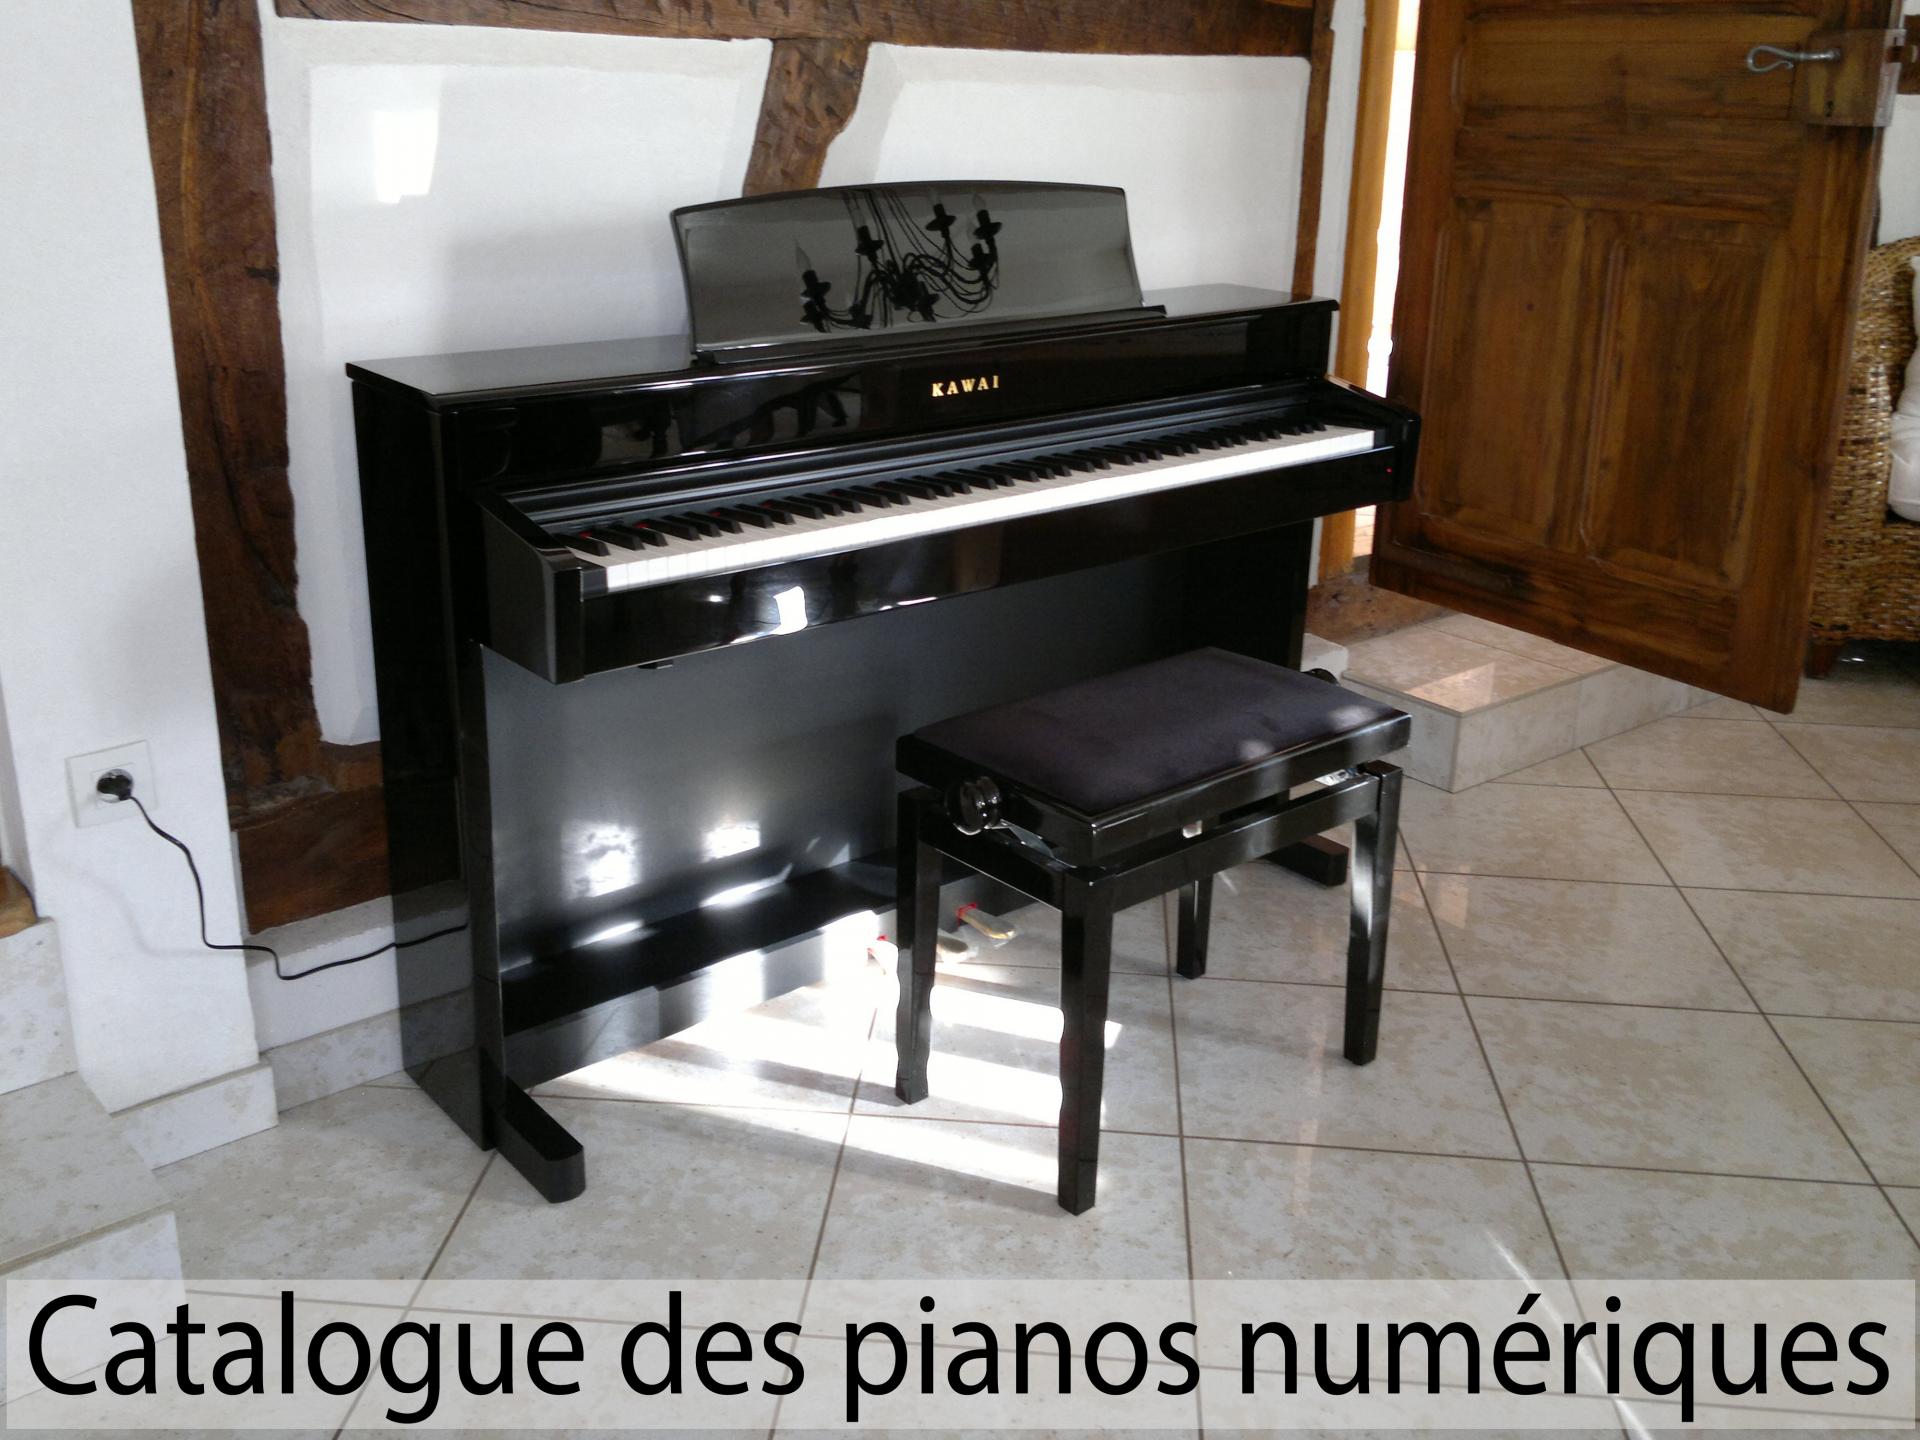 Pianos numériques